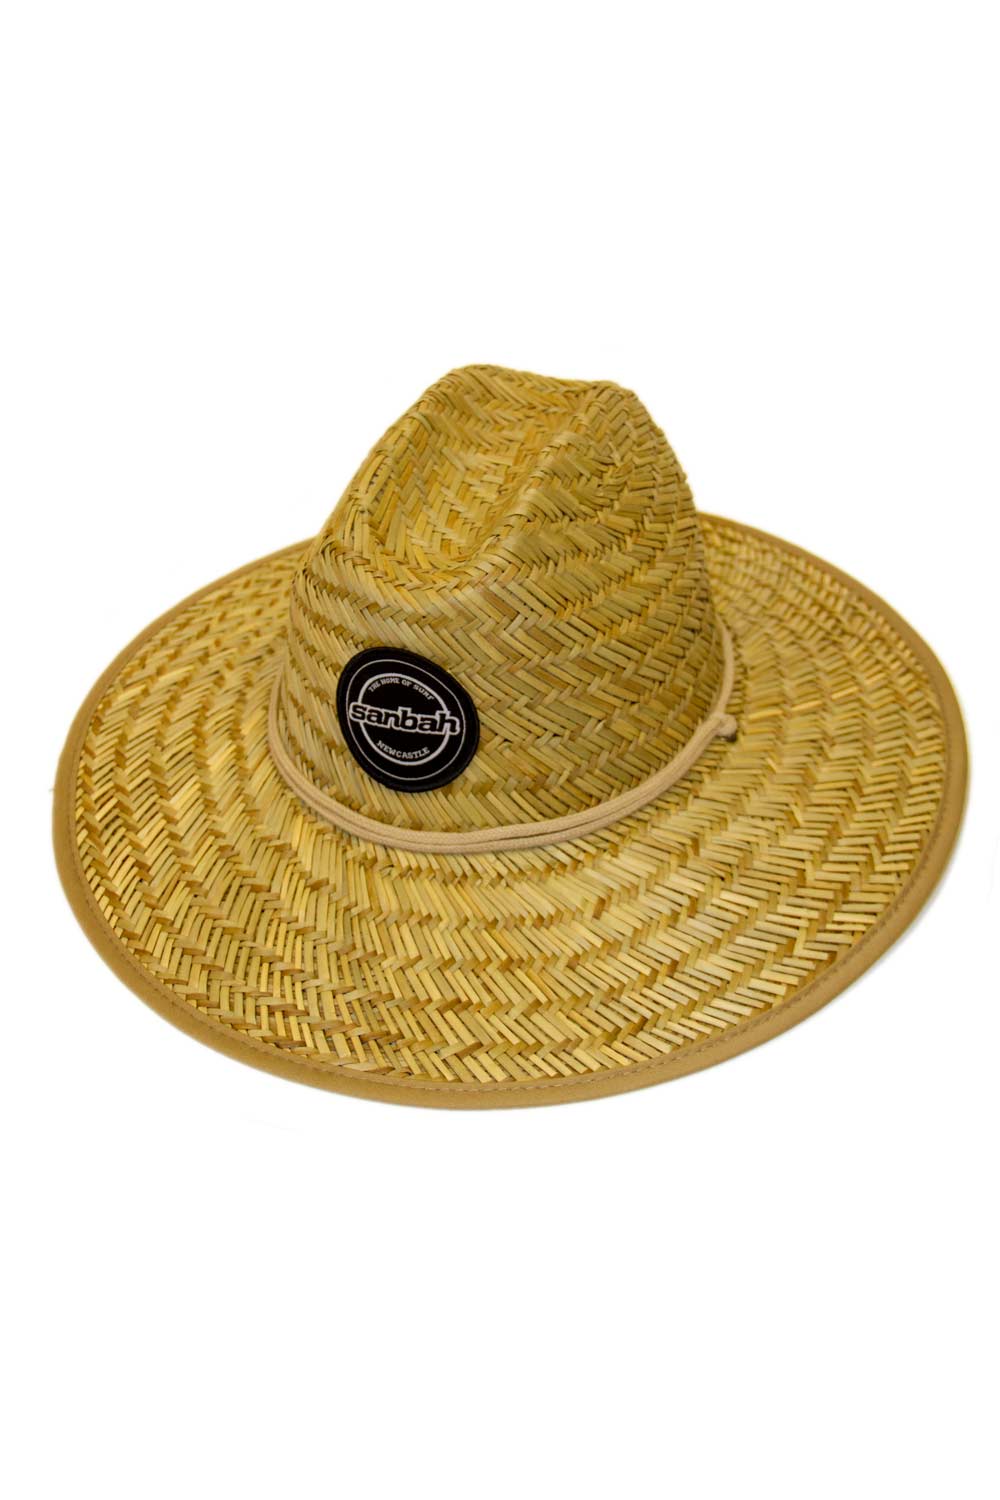 Sanbah Bula Rush Cane Hat